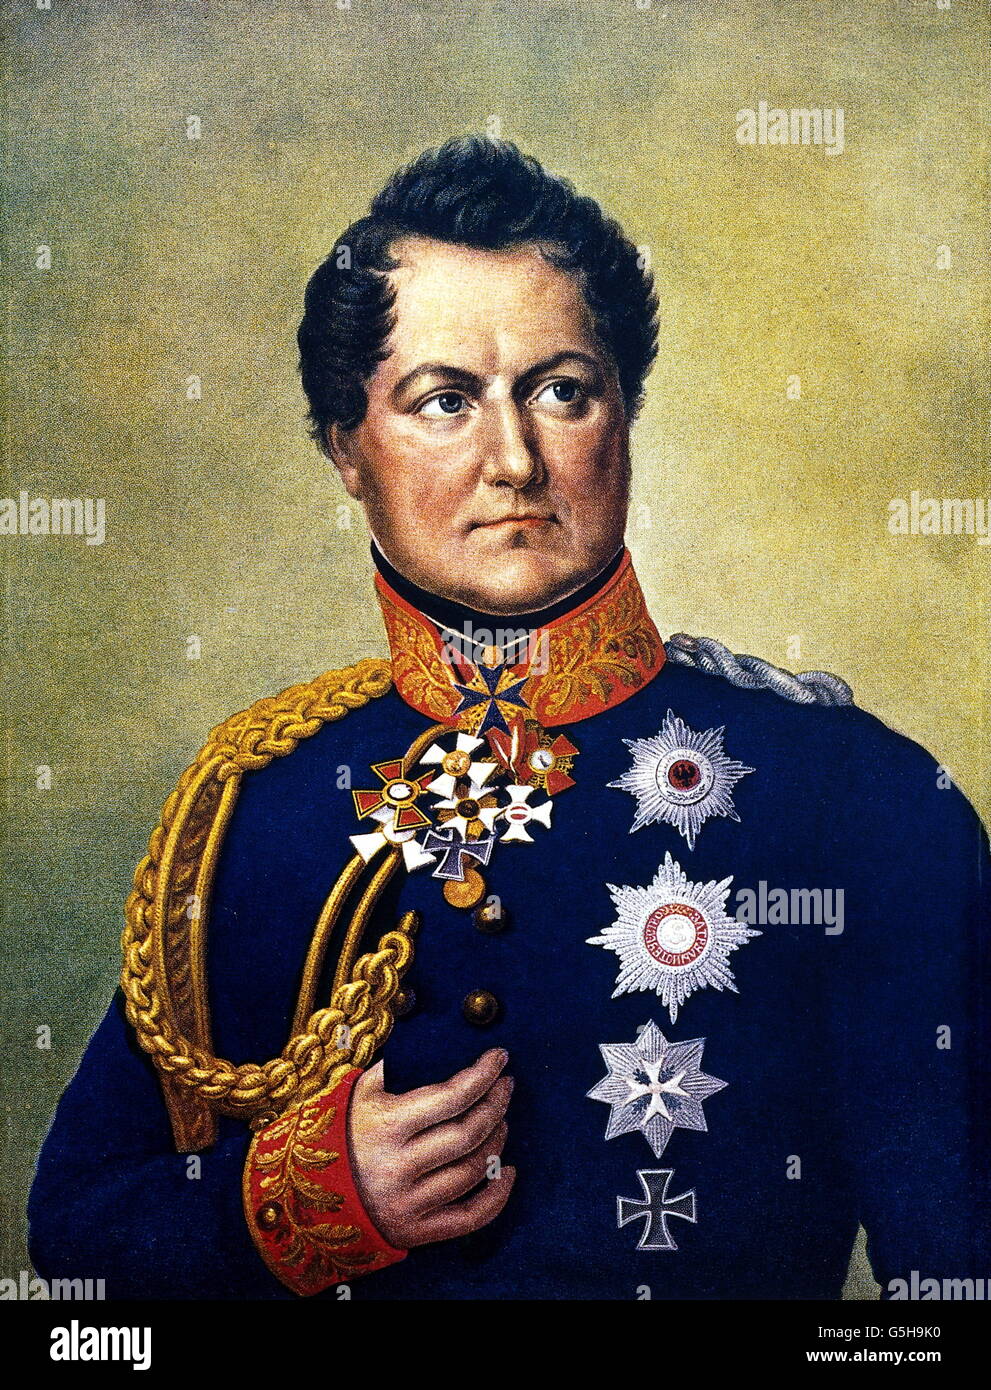 Gneisenau, August Wilhelm Graf Neidhardt von, 27.10.1760 - 23.8.1831, Prussian general, portrait, in uniform, painting by E.B. Gebauer, 19th century, Stock Photo